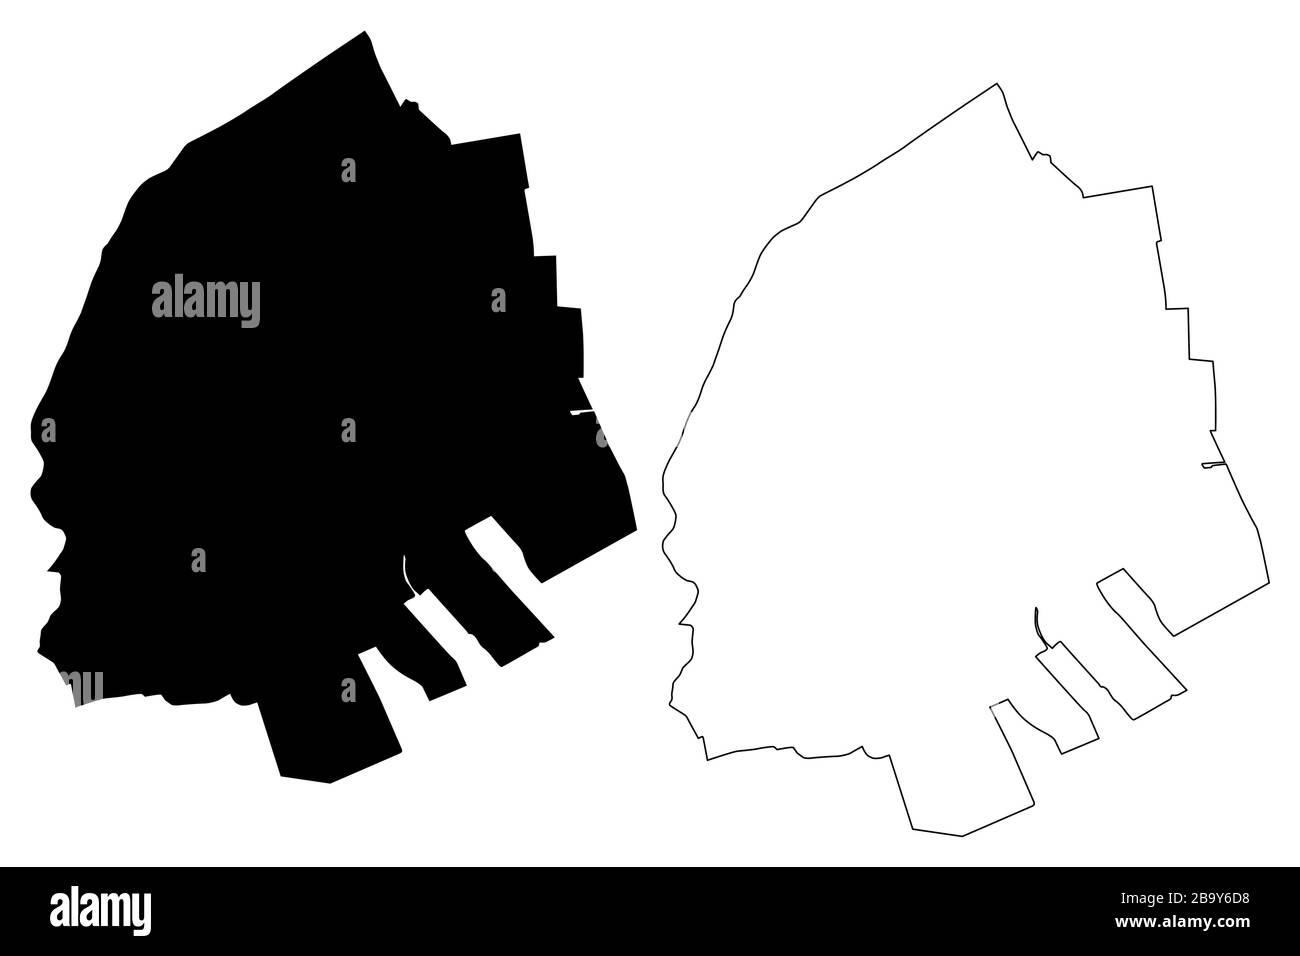 Emmen City (Königreich der Niederlande, Drenthe, Holland) Karte Vektor Illustration, Scribble Sketch City of Emmen Karte Stock Vektor